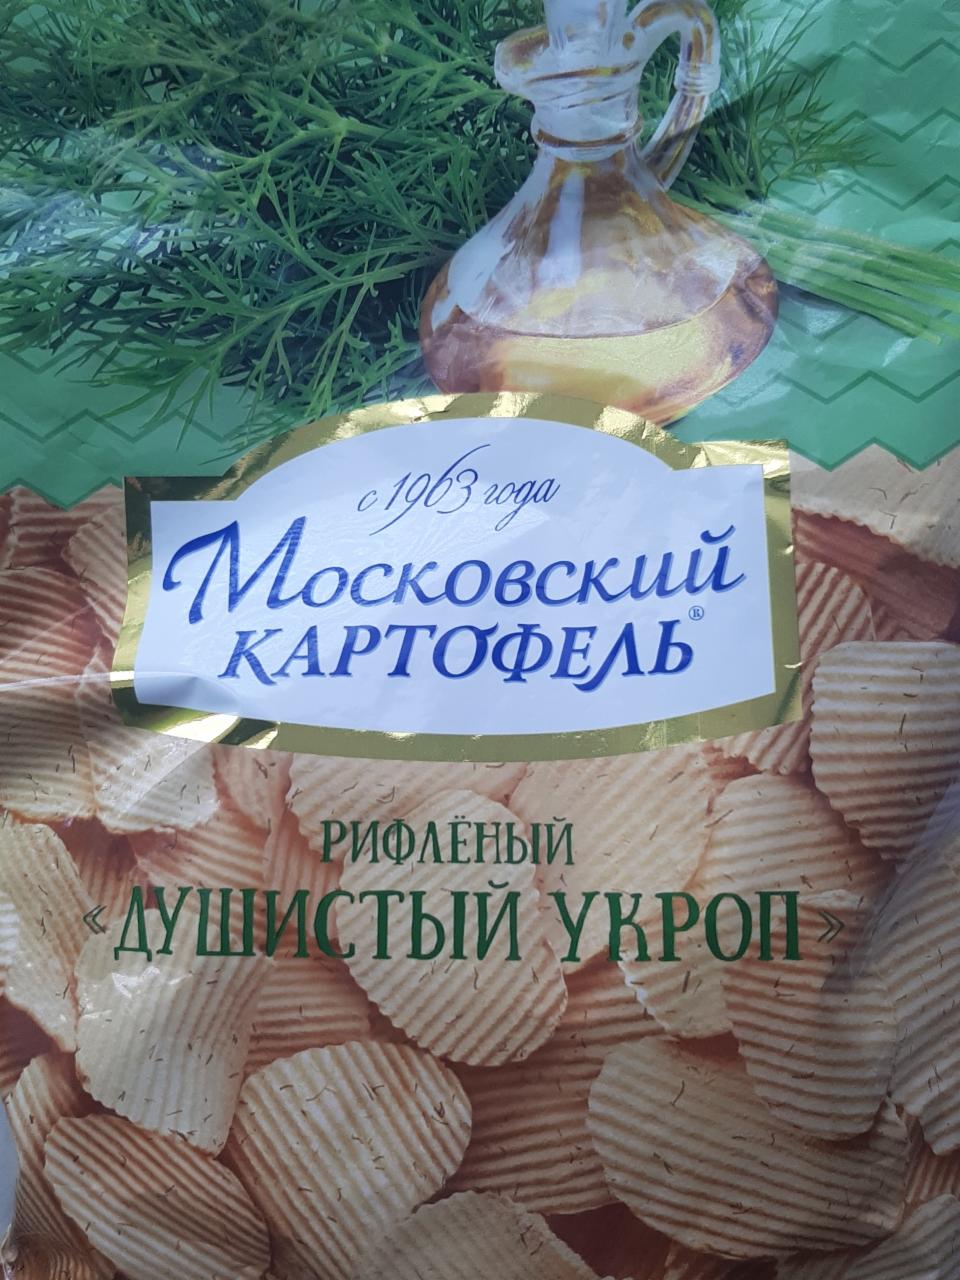 Фото - рифленый душистый укроп Московский картофель